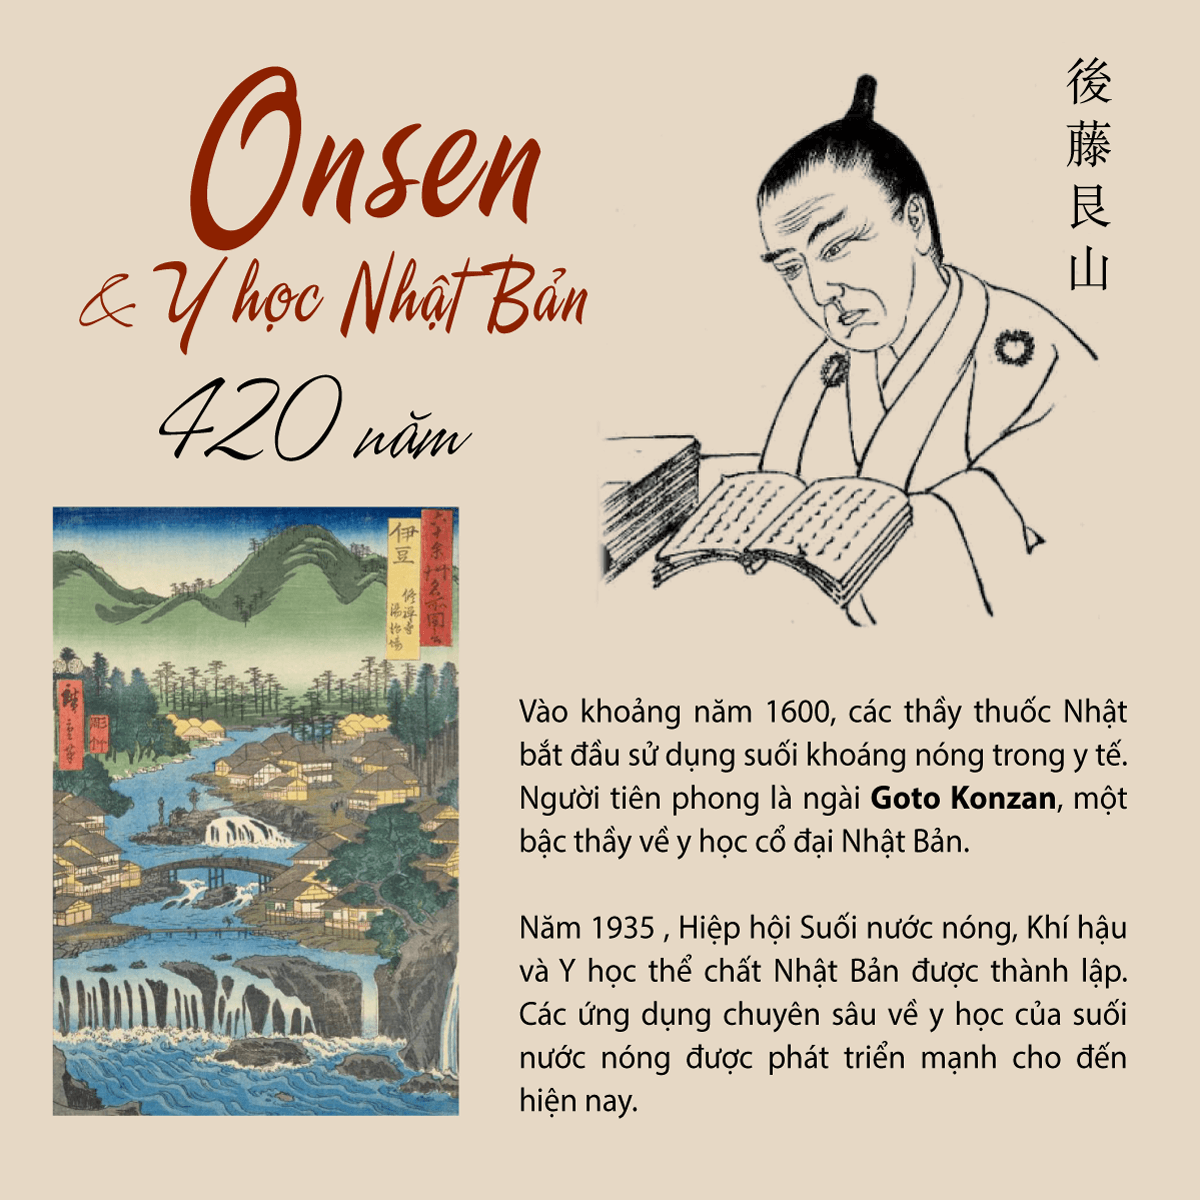 Onsen và nền y học Nhật Bản 420 năm